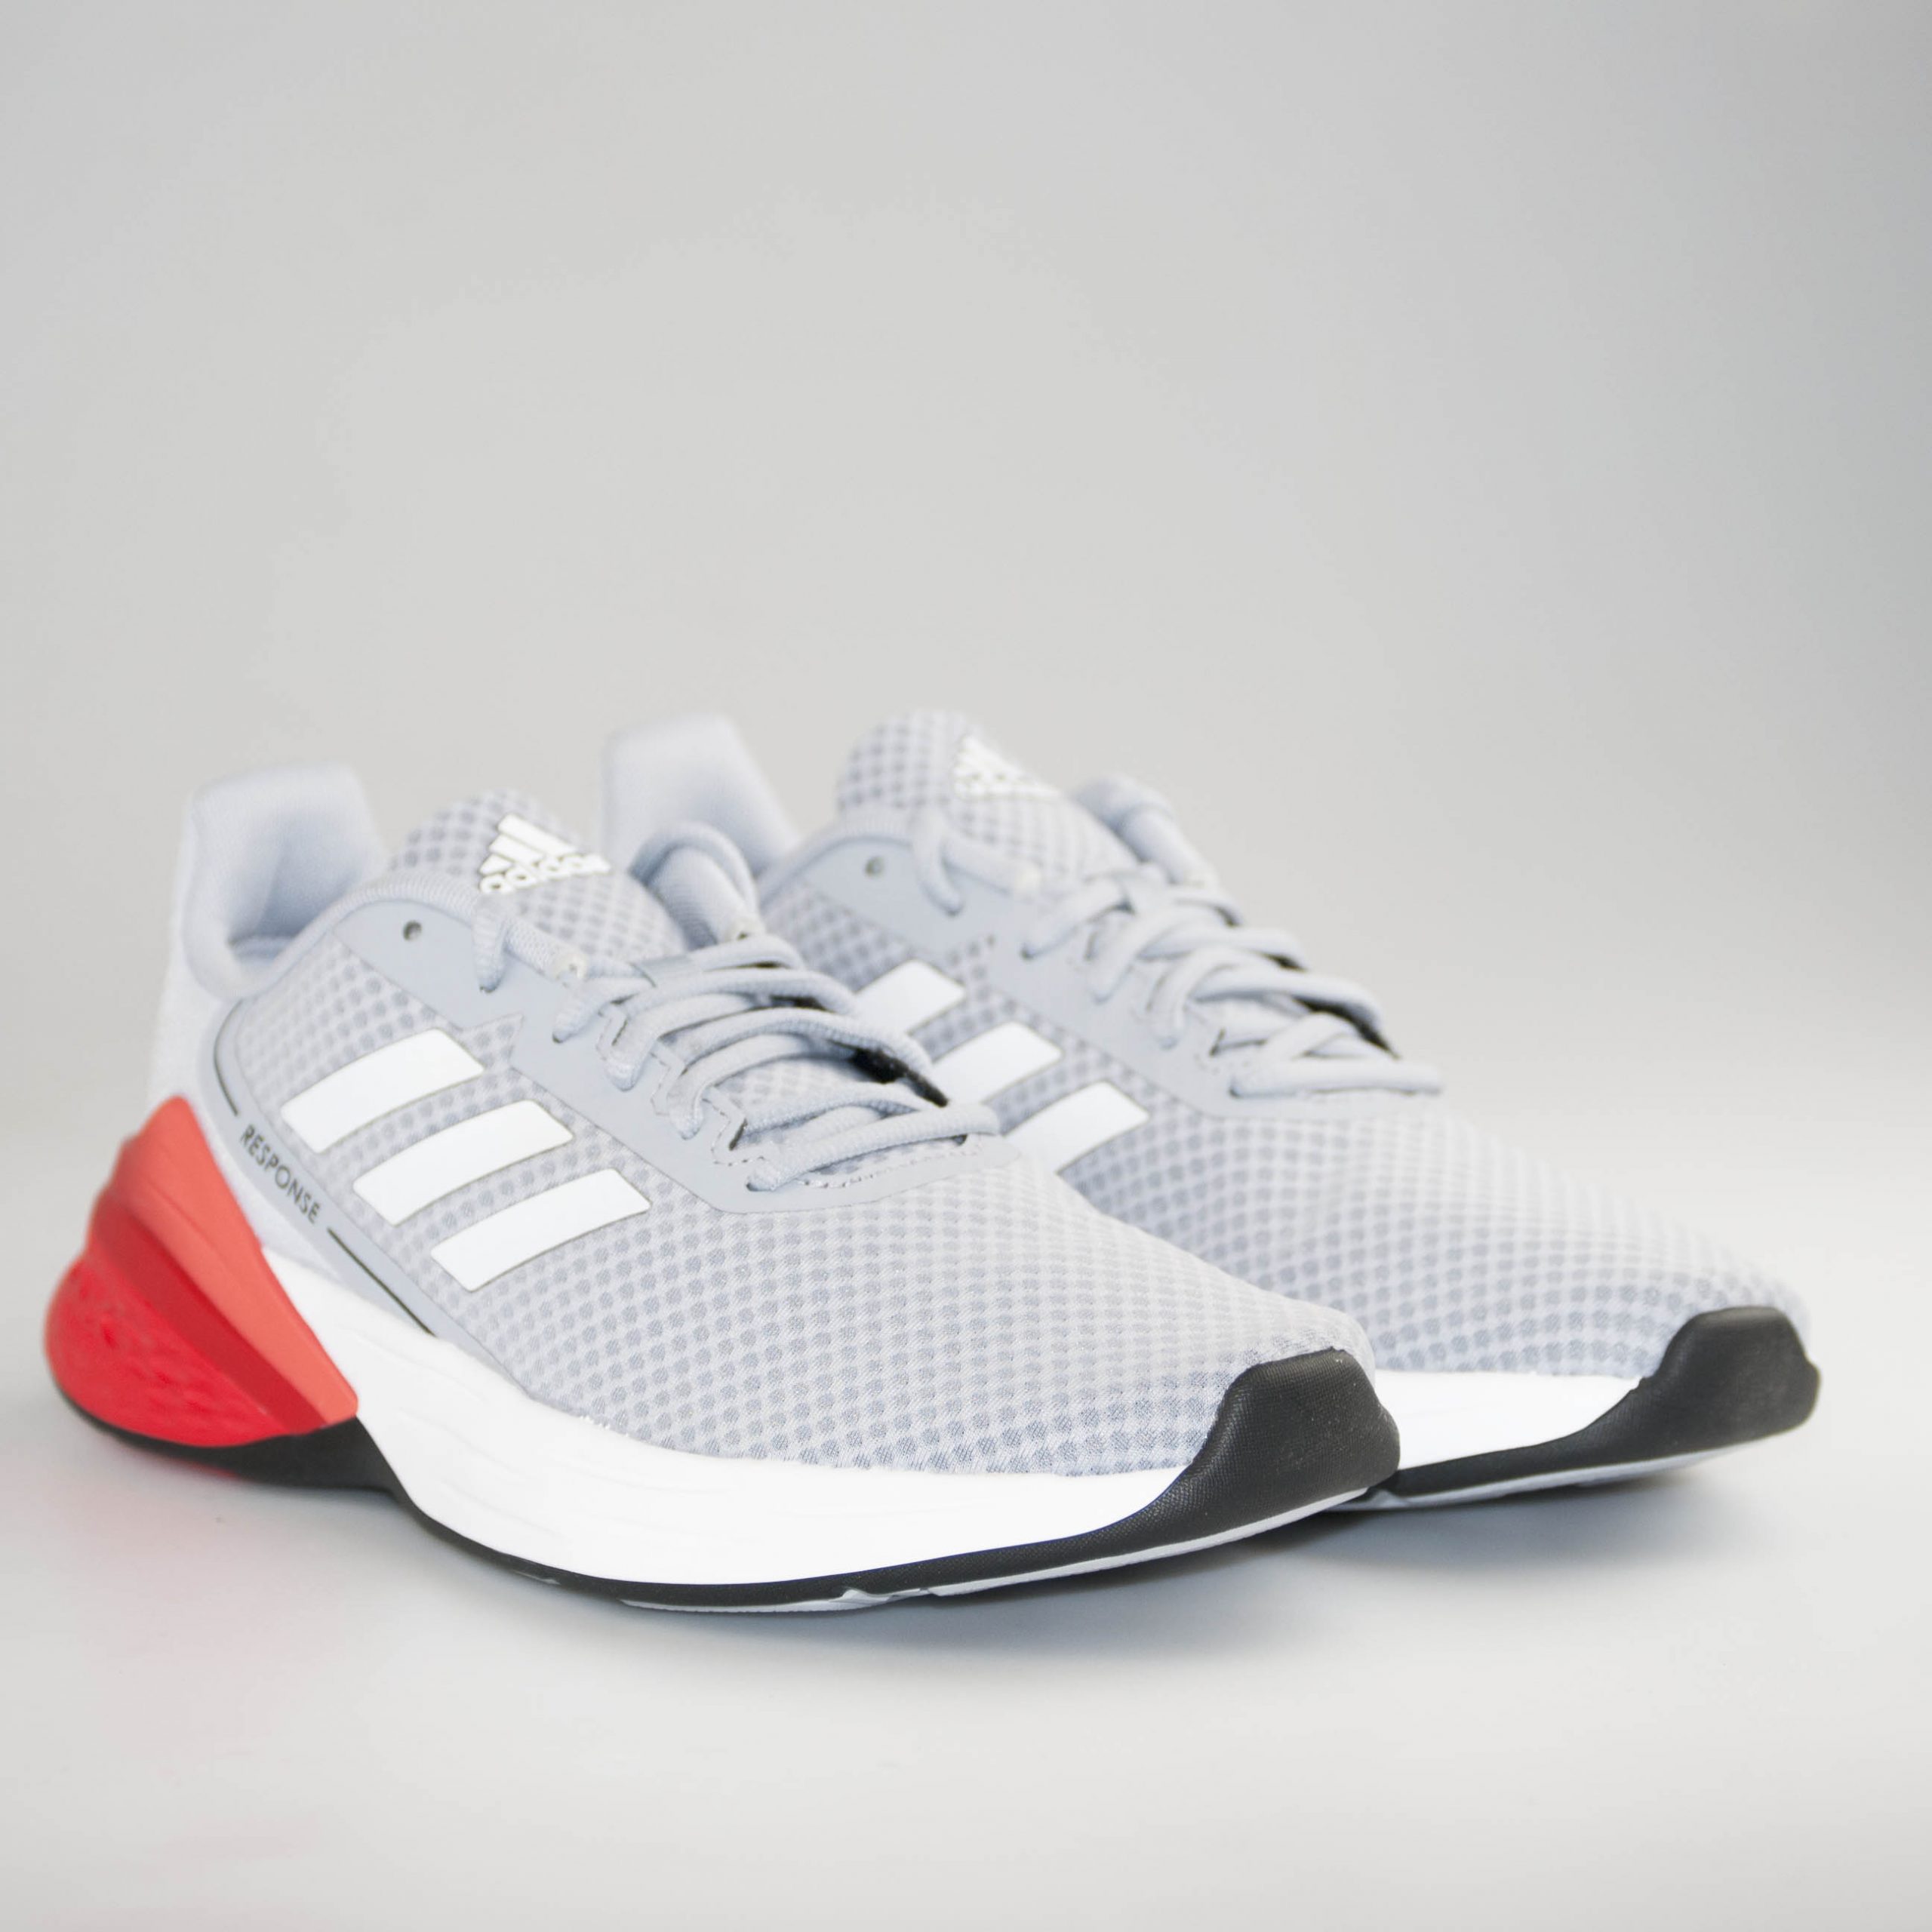 Adidas Response SR sneaker running grigio/rosso